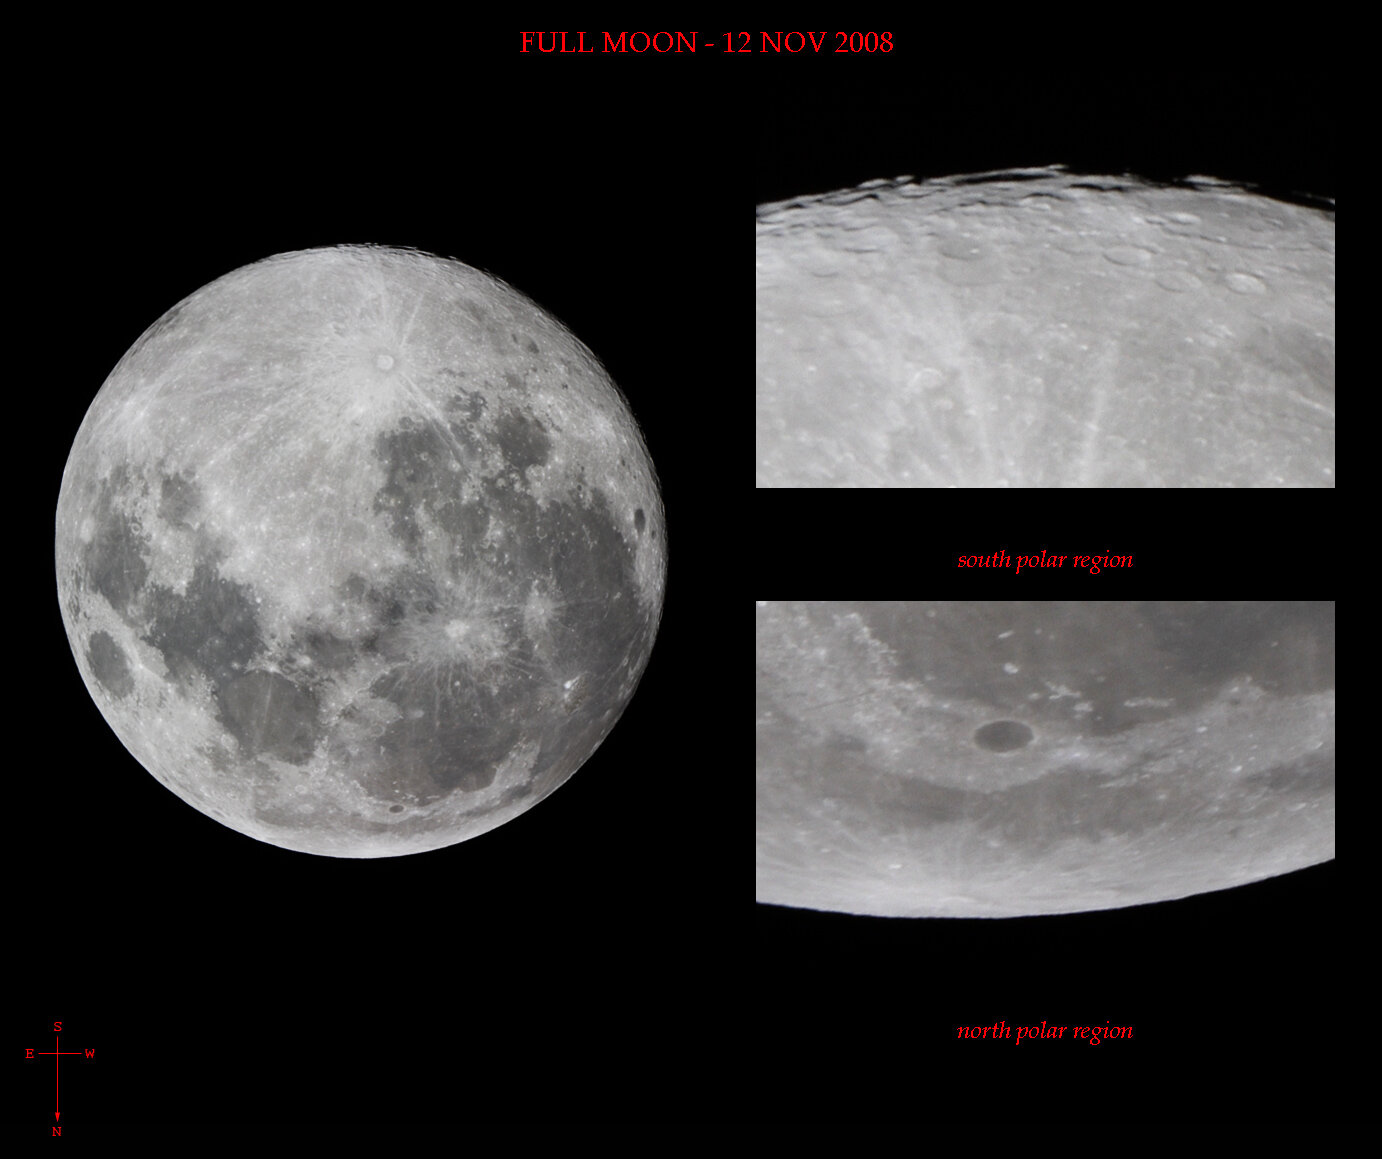 Full Moon and Polar Regions - Nov 12 2008